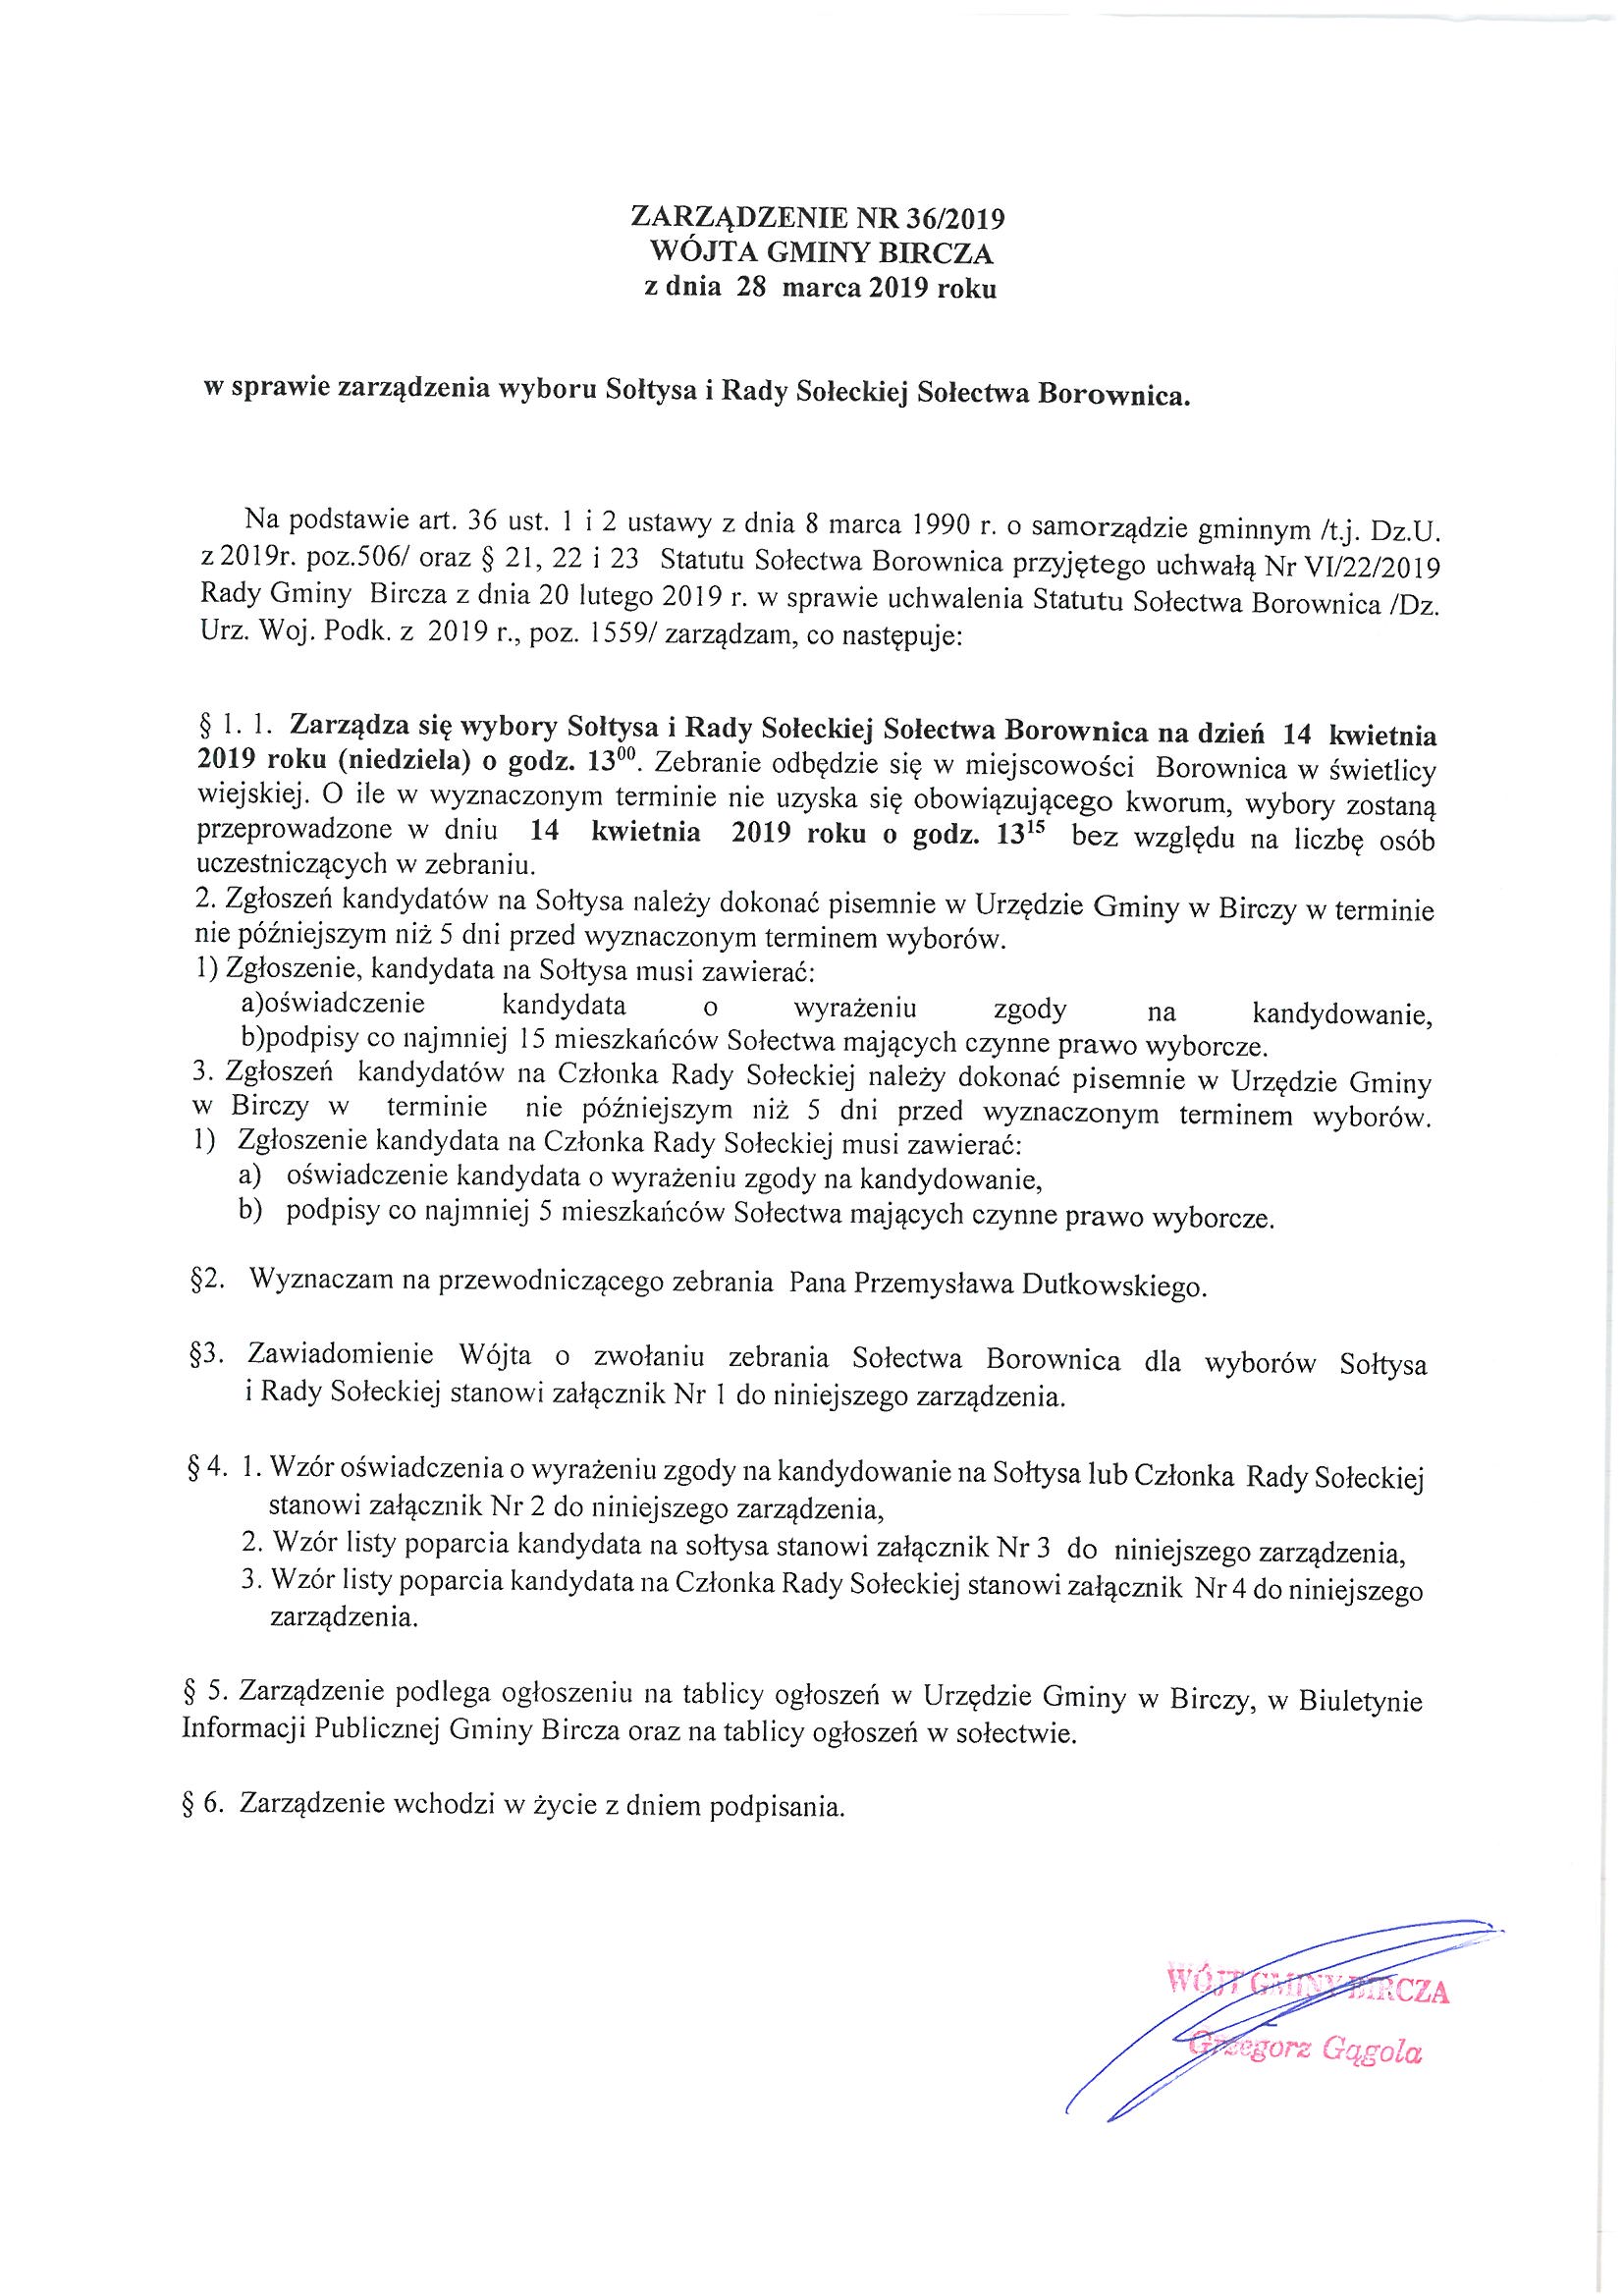 ------- Zarządzenie w sprawie wyboru Sołtysa i Rady Sołeckiej Borownica.jpg